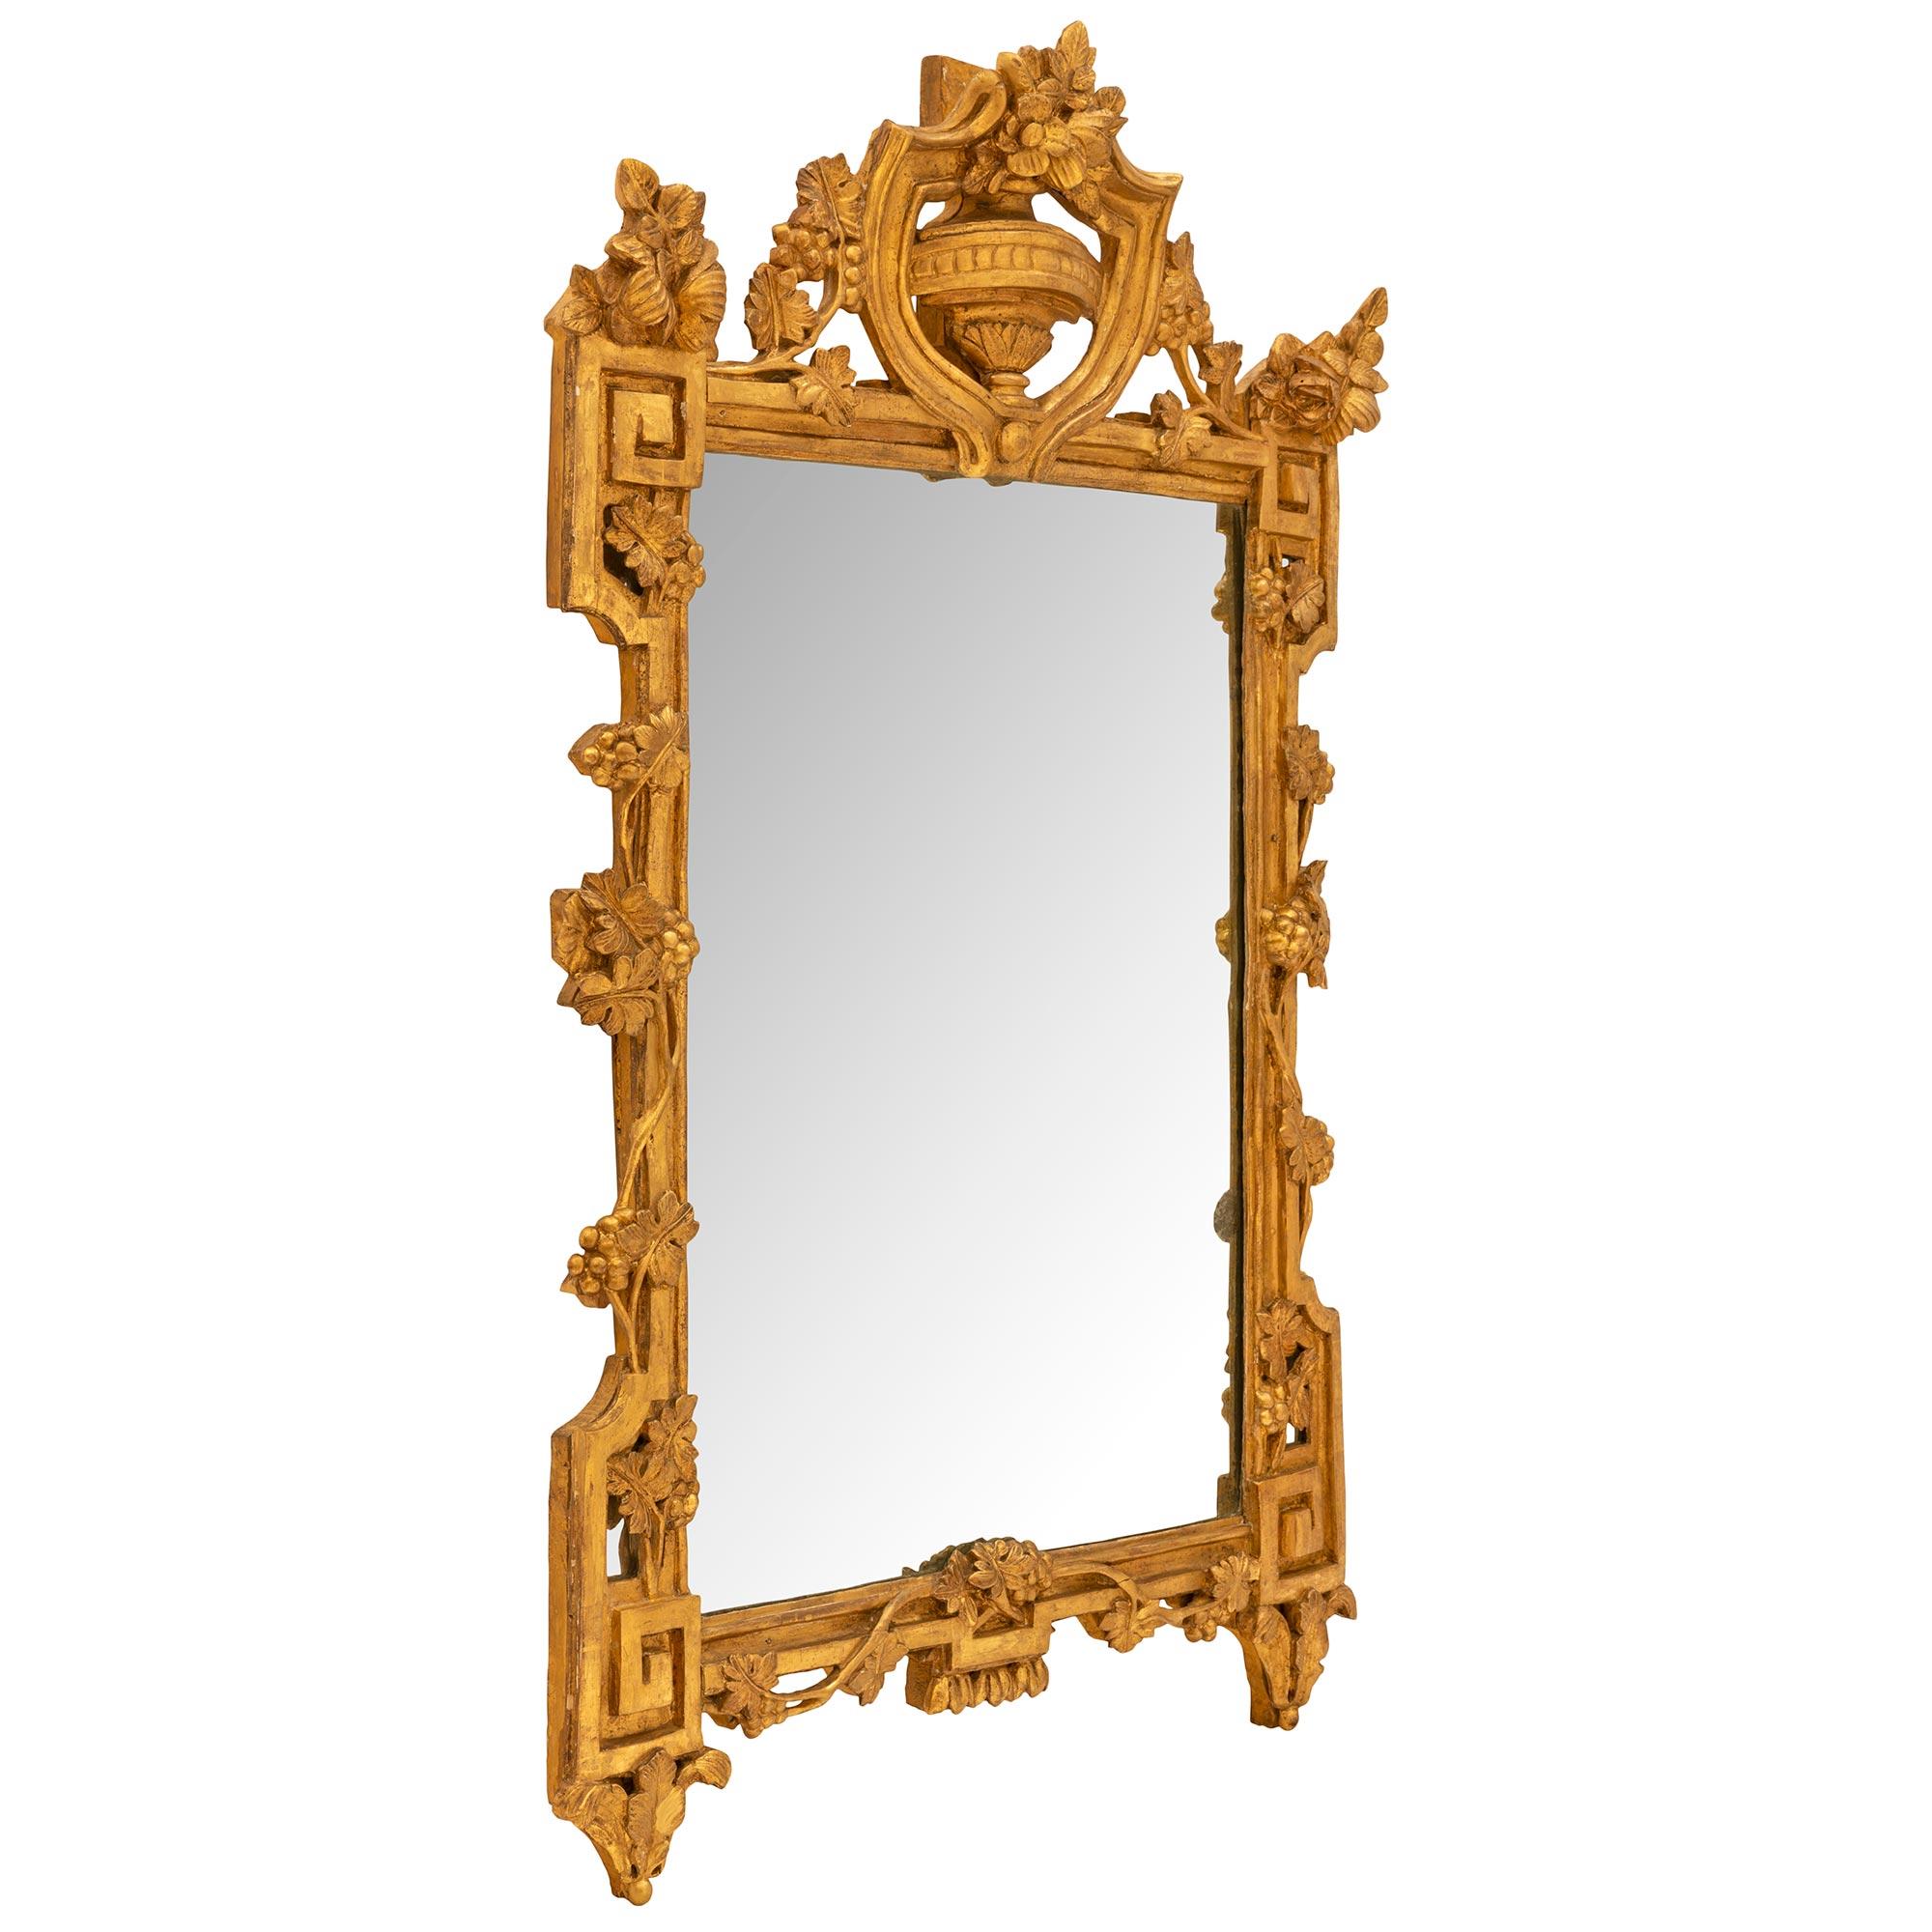 Ein schöner französischer Spiegel aus der Régence-Periode des 18. Jahrhunderts aus provenzalischem Goldholz. Der Spiegel behält seine originale Spiegelplatte, die von einer gesprenkelten Goldholzeinfassung umrahmt ist. Die Umrandung zeigt ein